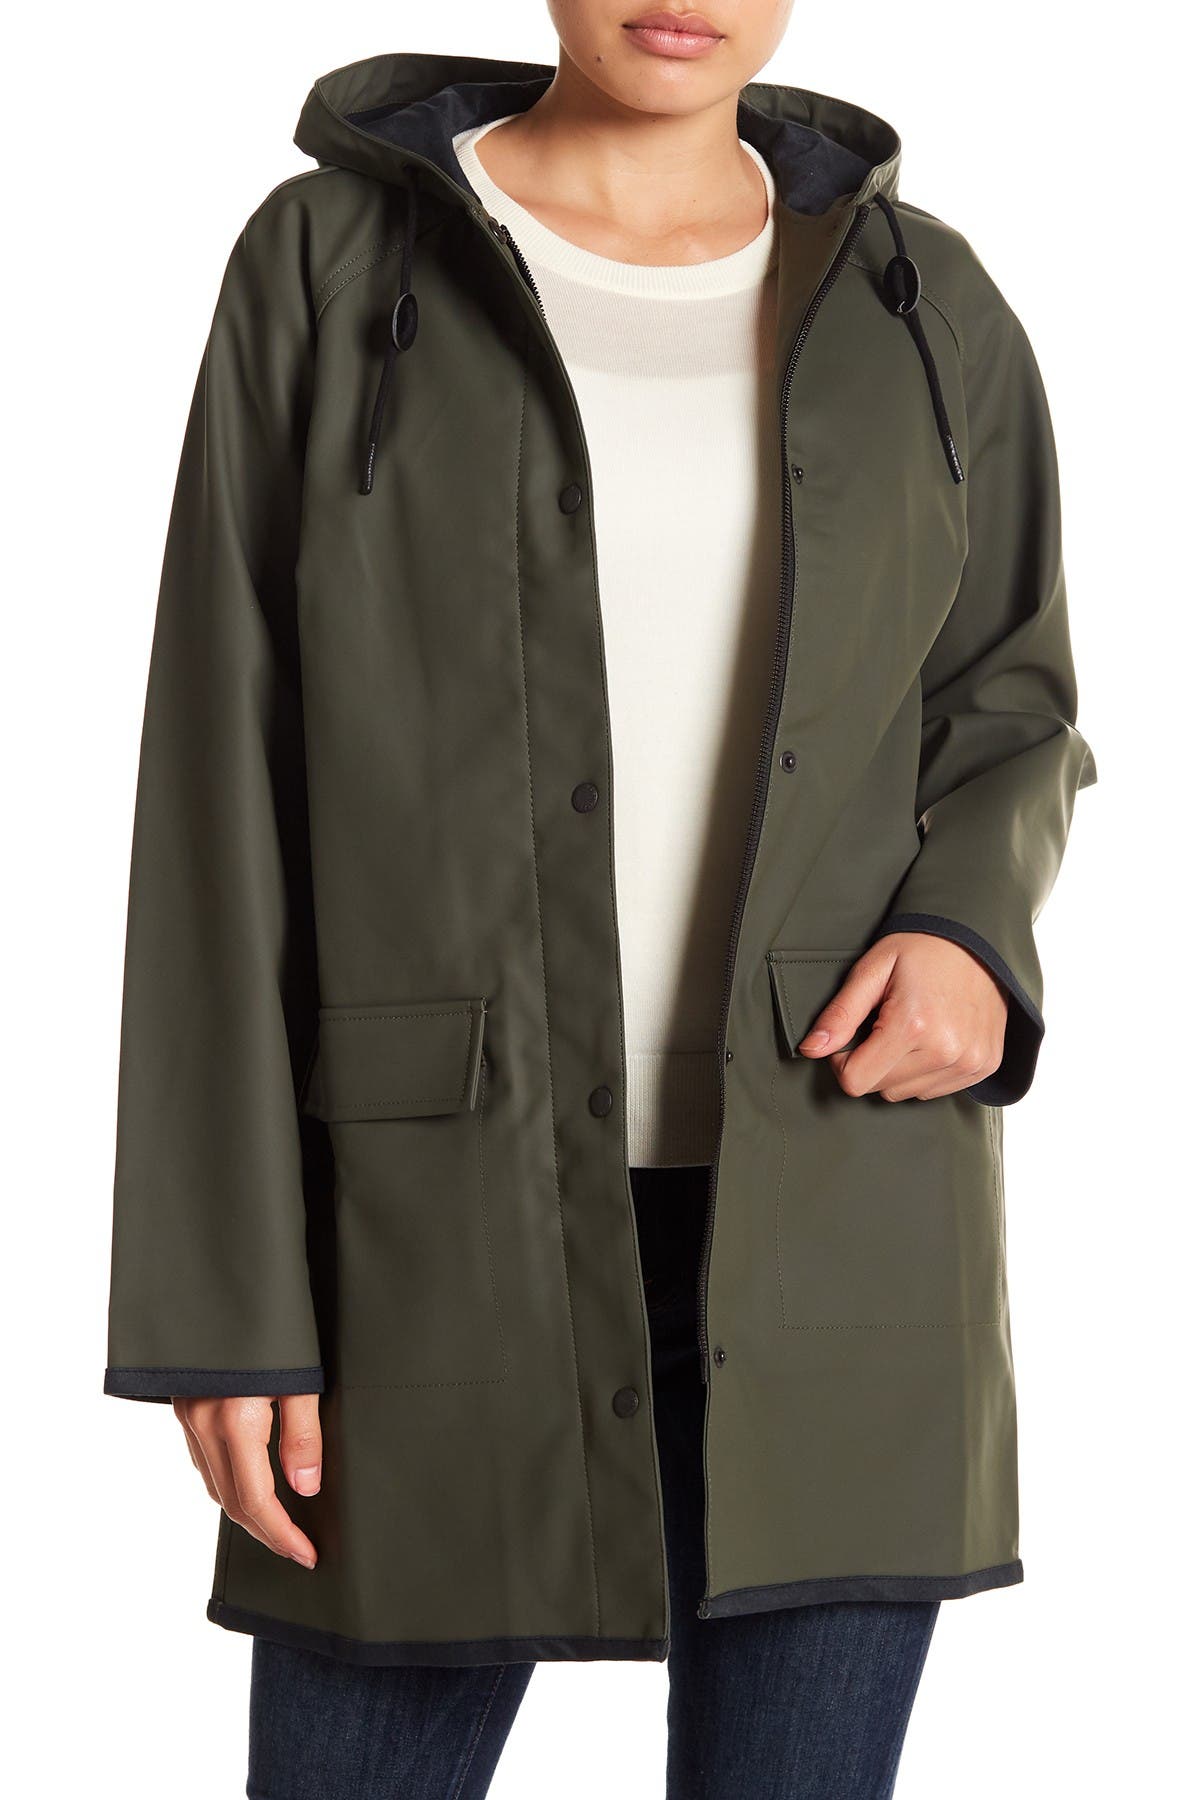 levi's hooded front zip raincoat